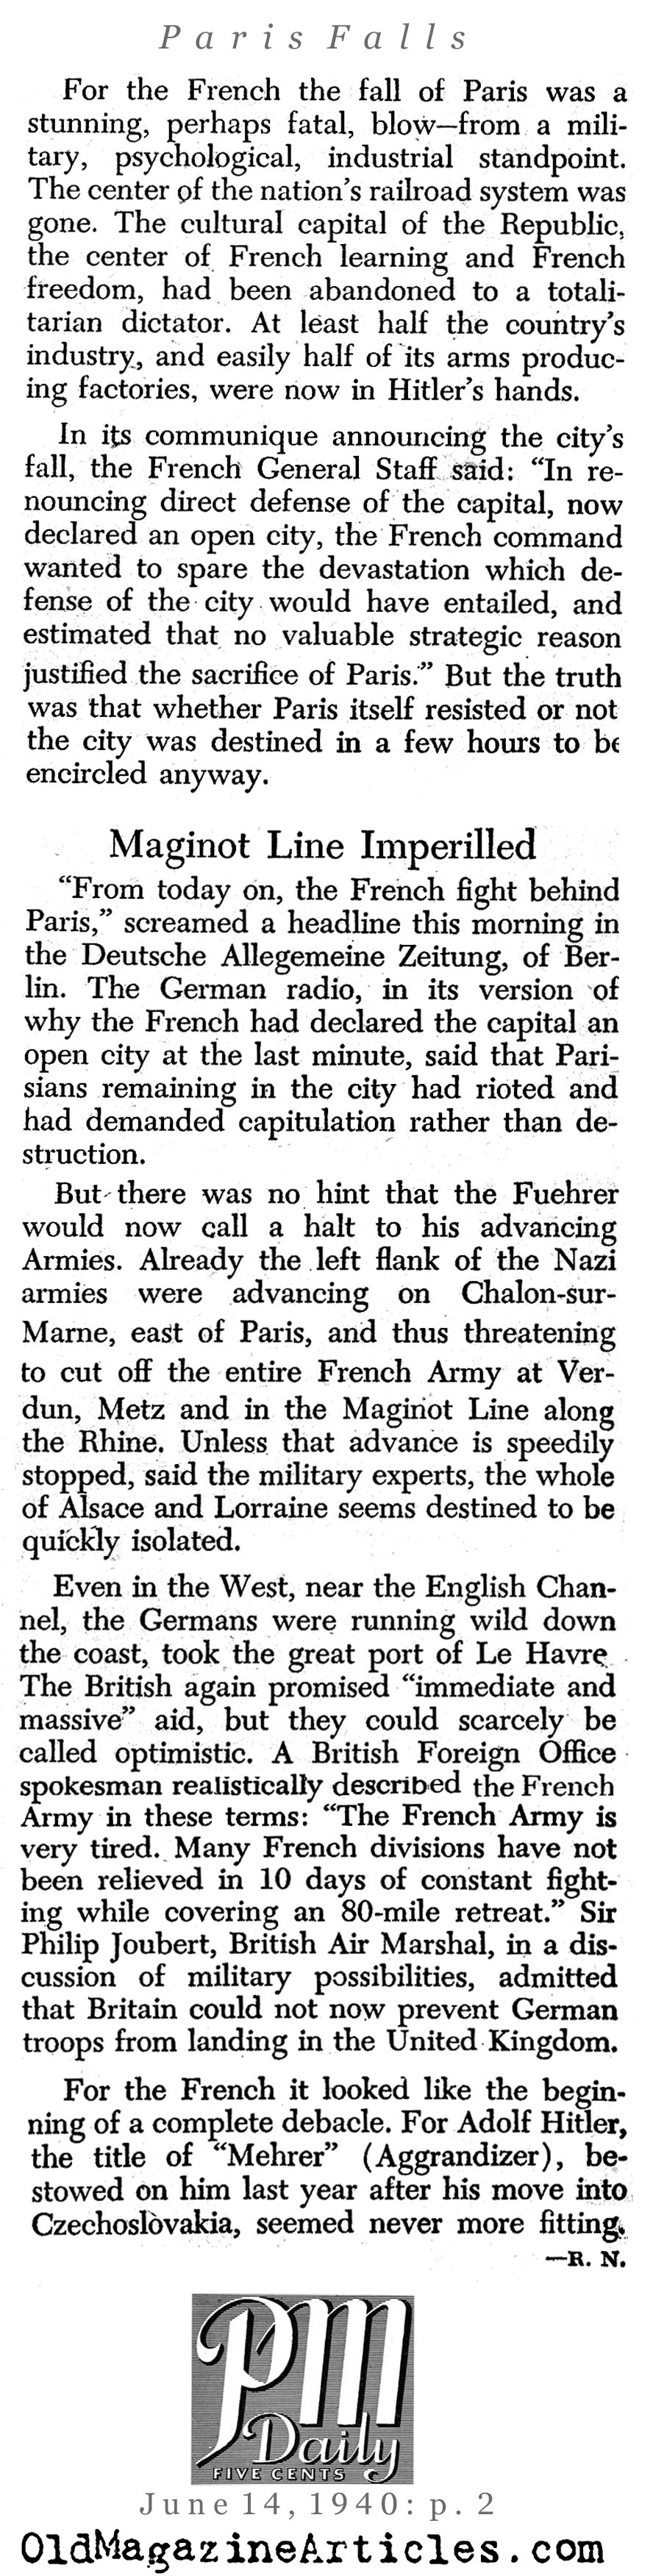 Nazis Take Paris (PM Tabloid, 1940)